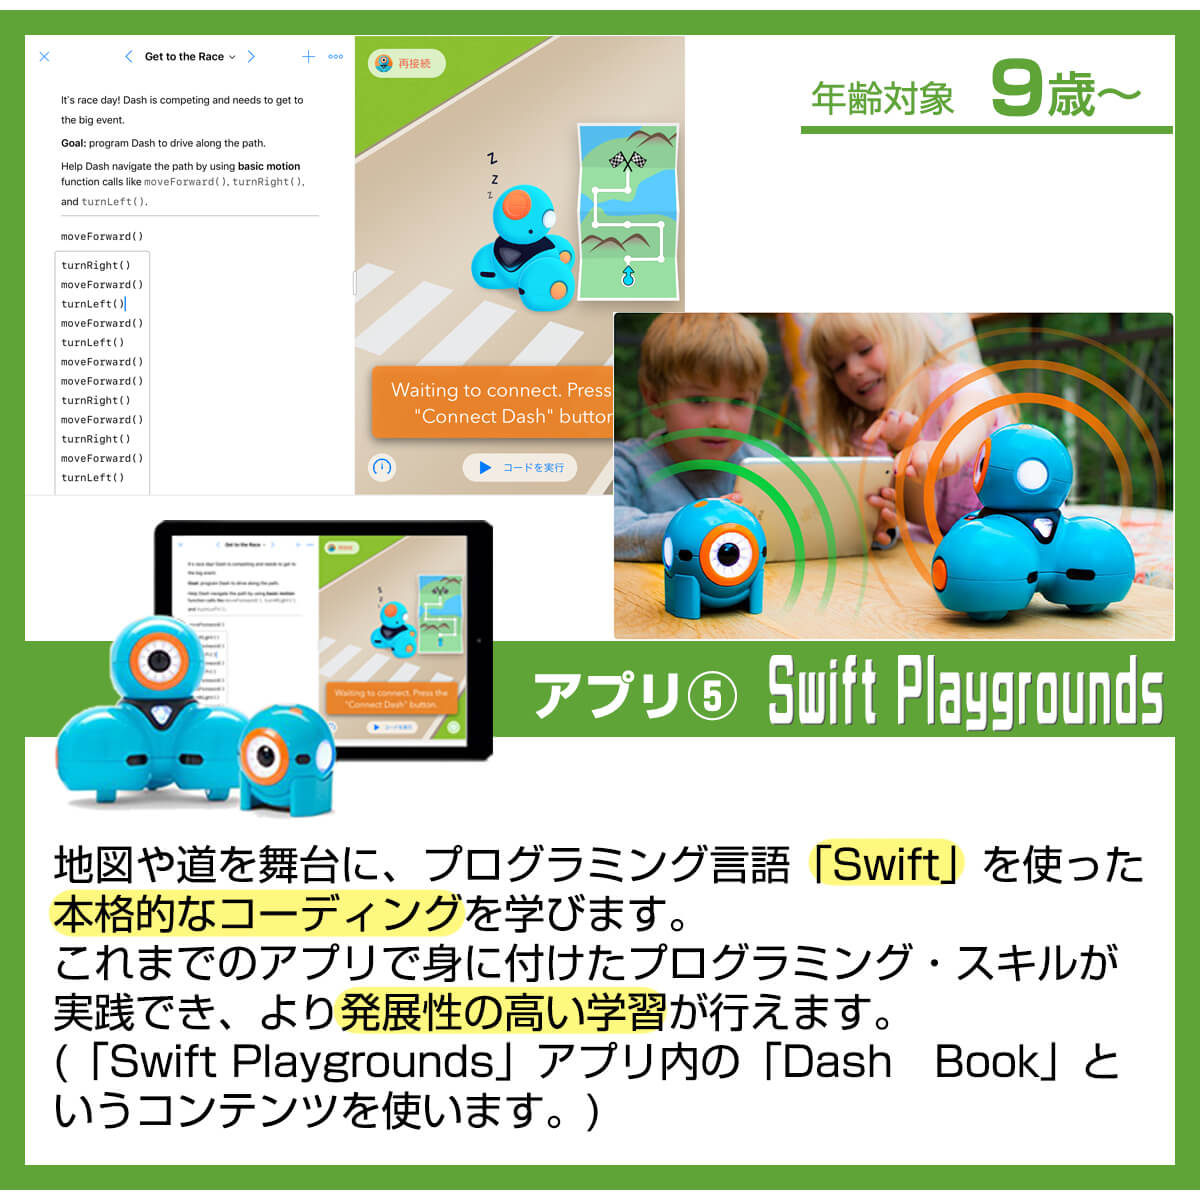 ダッシュくん専用アプリSwift Playgrounds